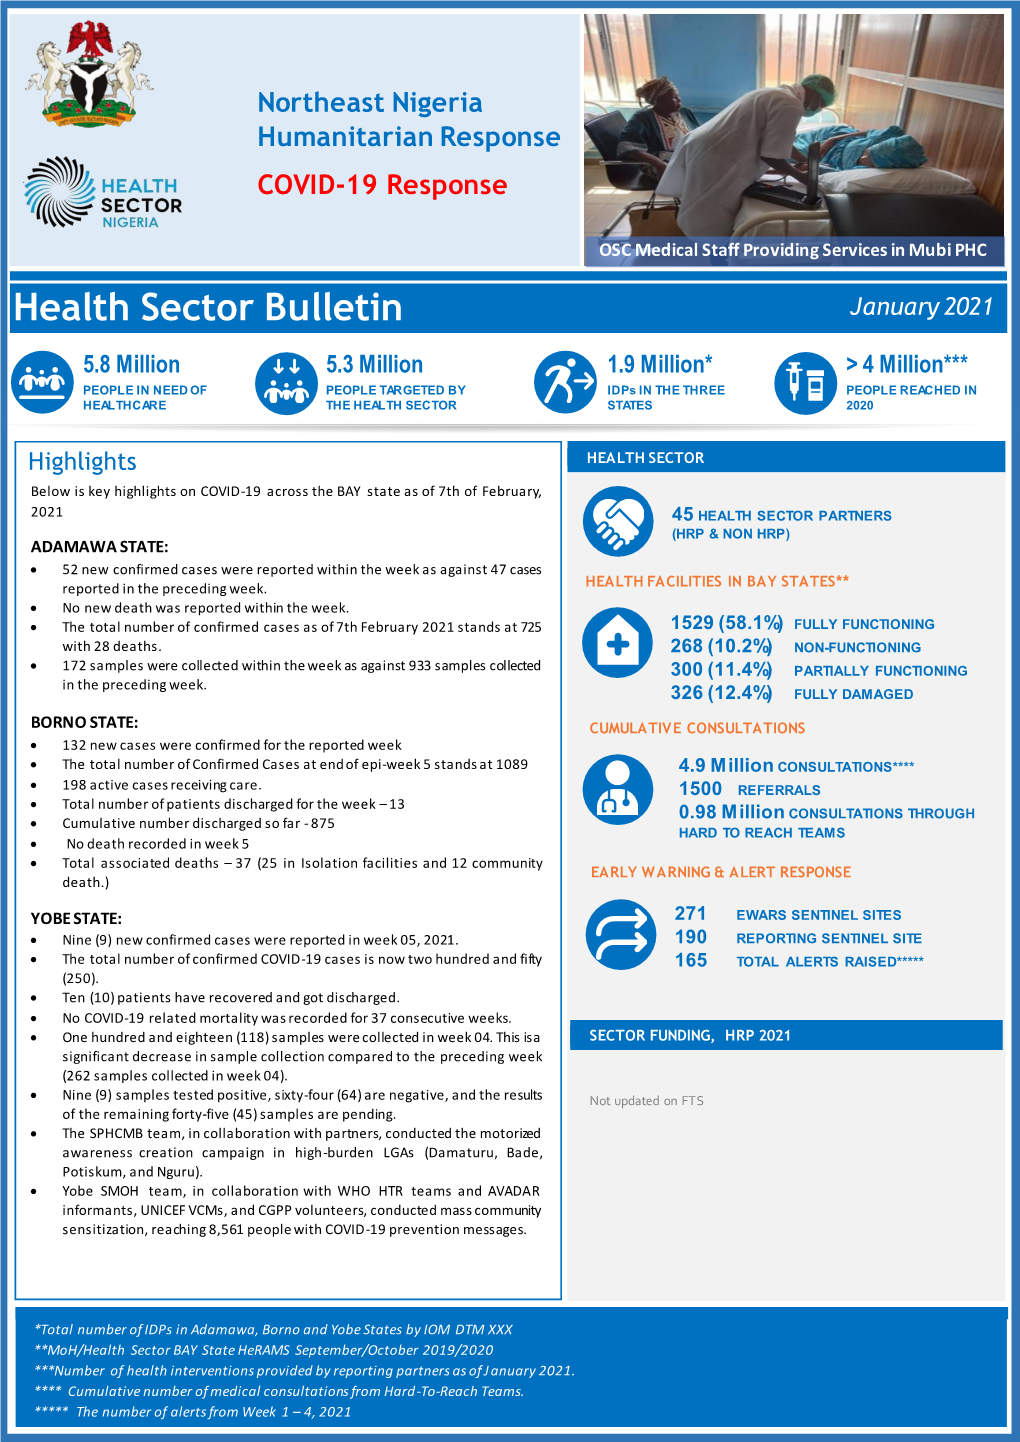 Health Sector Bulletin January 2021